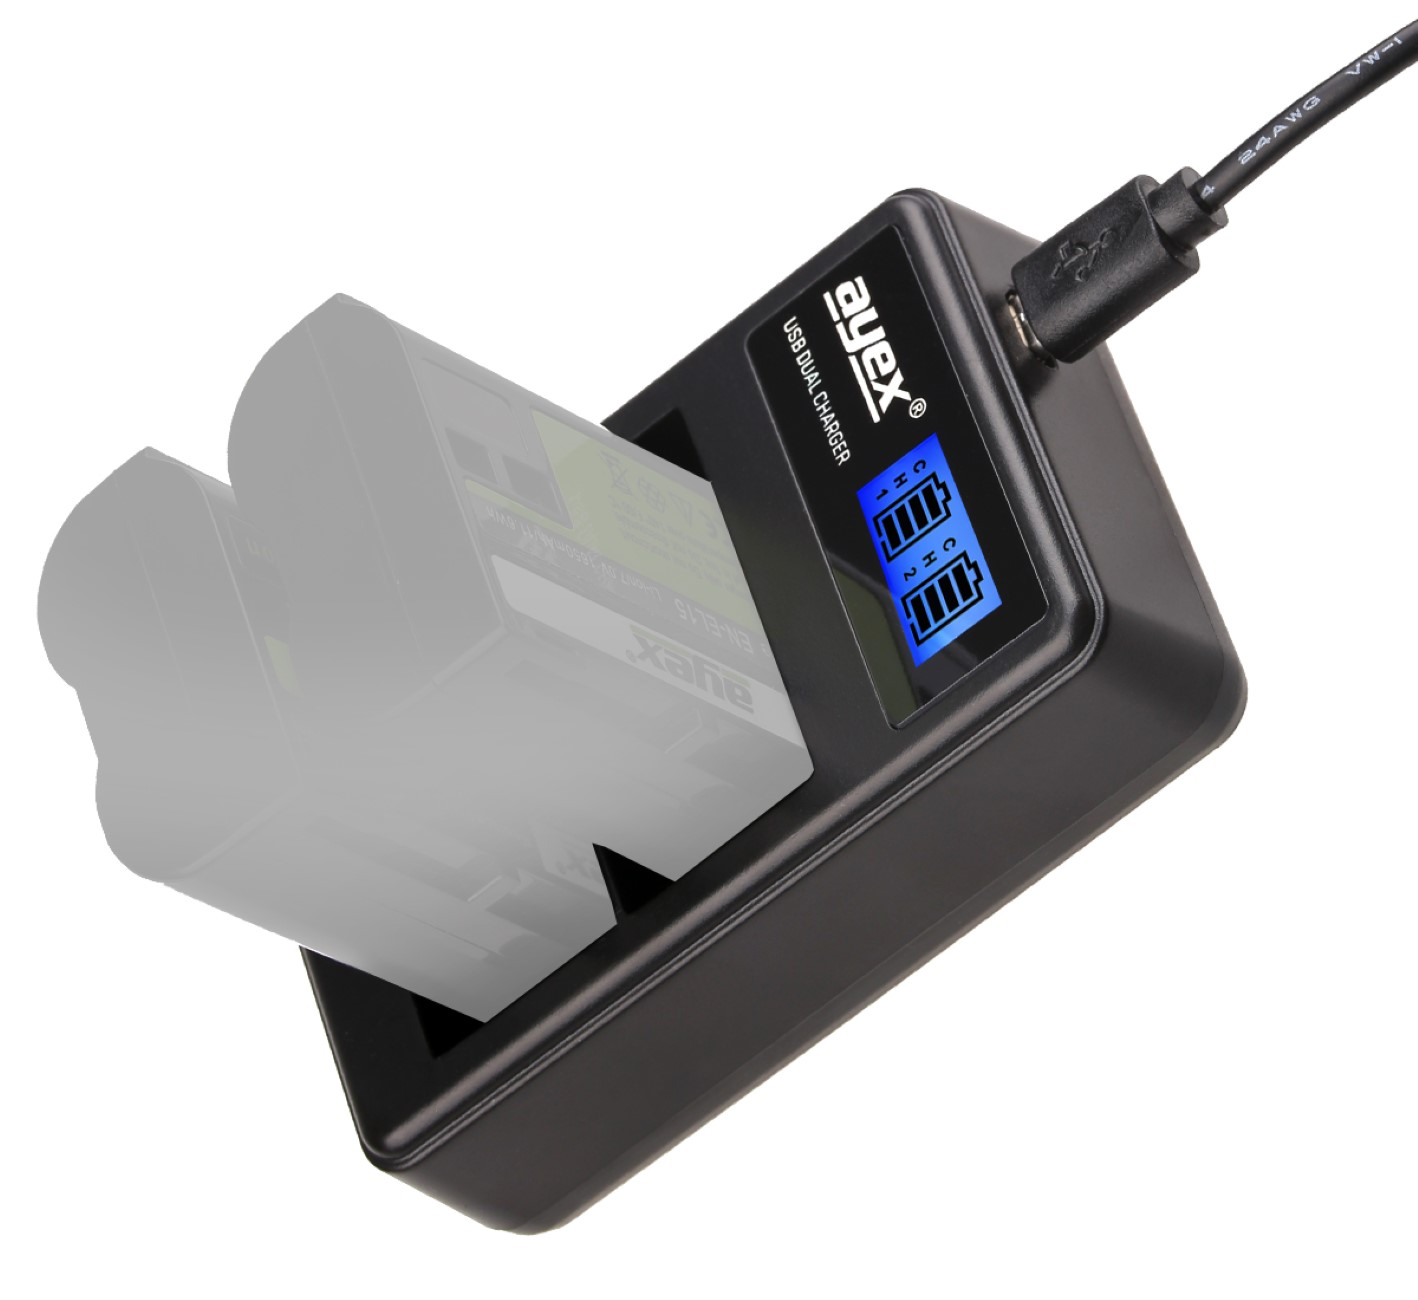 AYEX USB Dual Akkus, für Fujifilm Black Ladegerät Kamera-Akku Lader, NP-W126